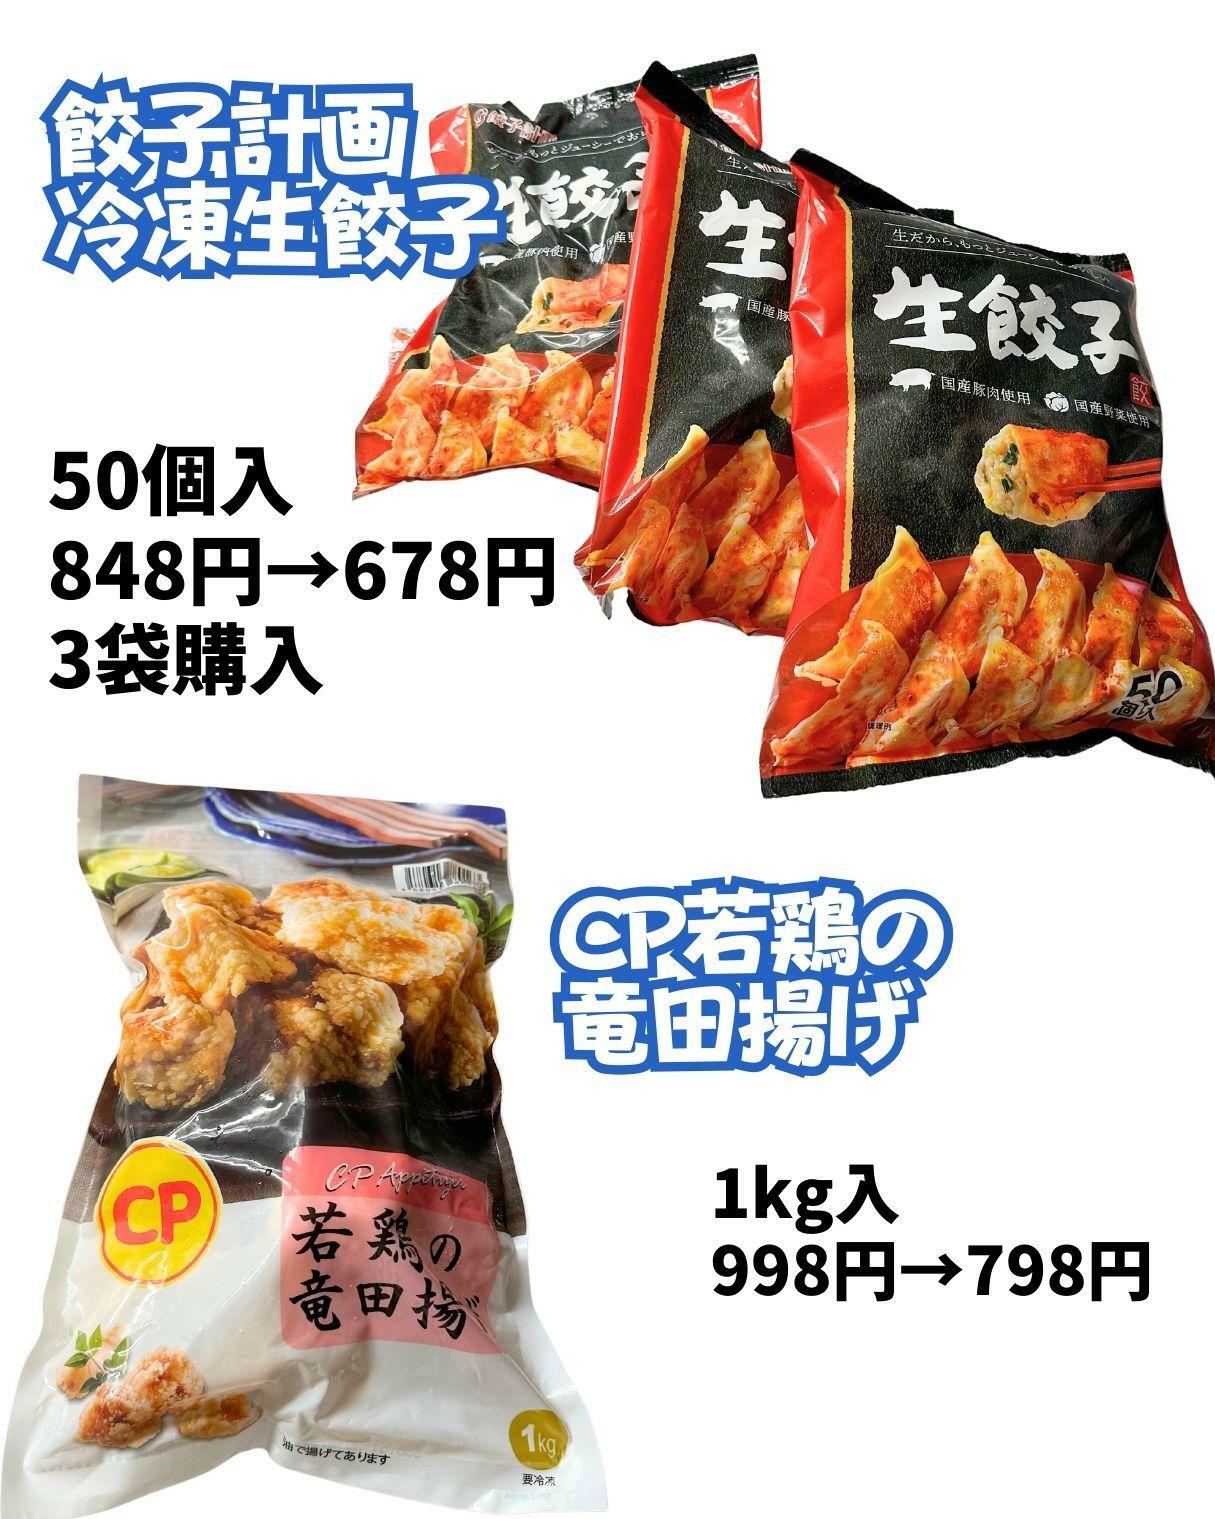 【コストコ】餃子計画の冷凍生餃子と若鶏の竜田揚げ